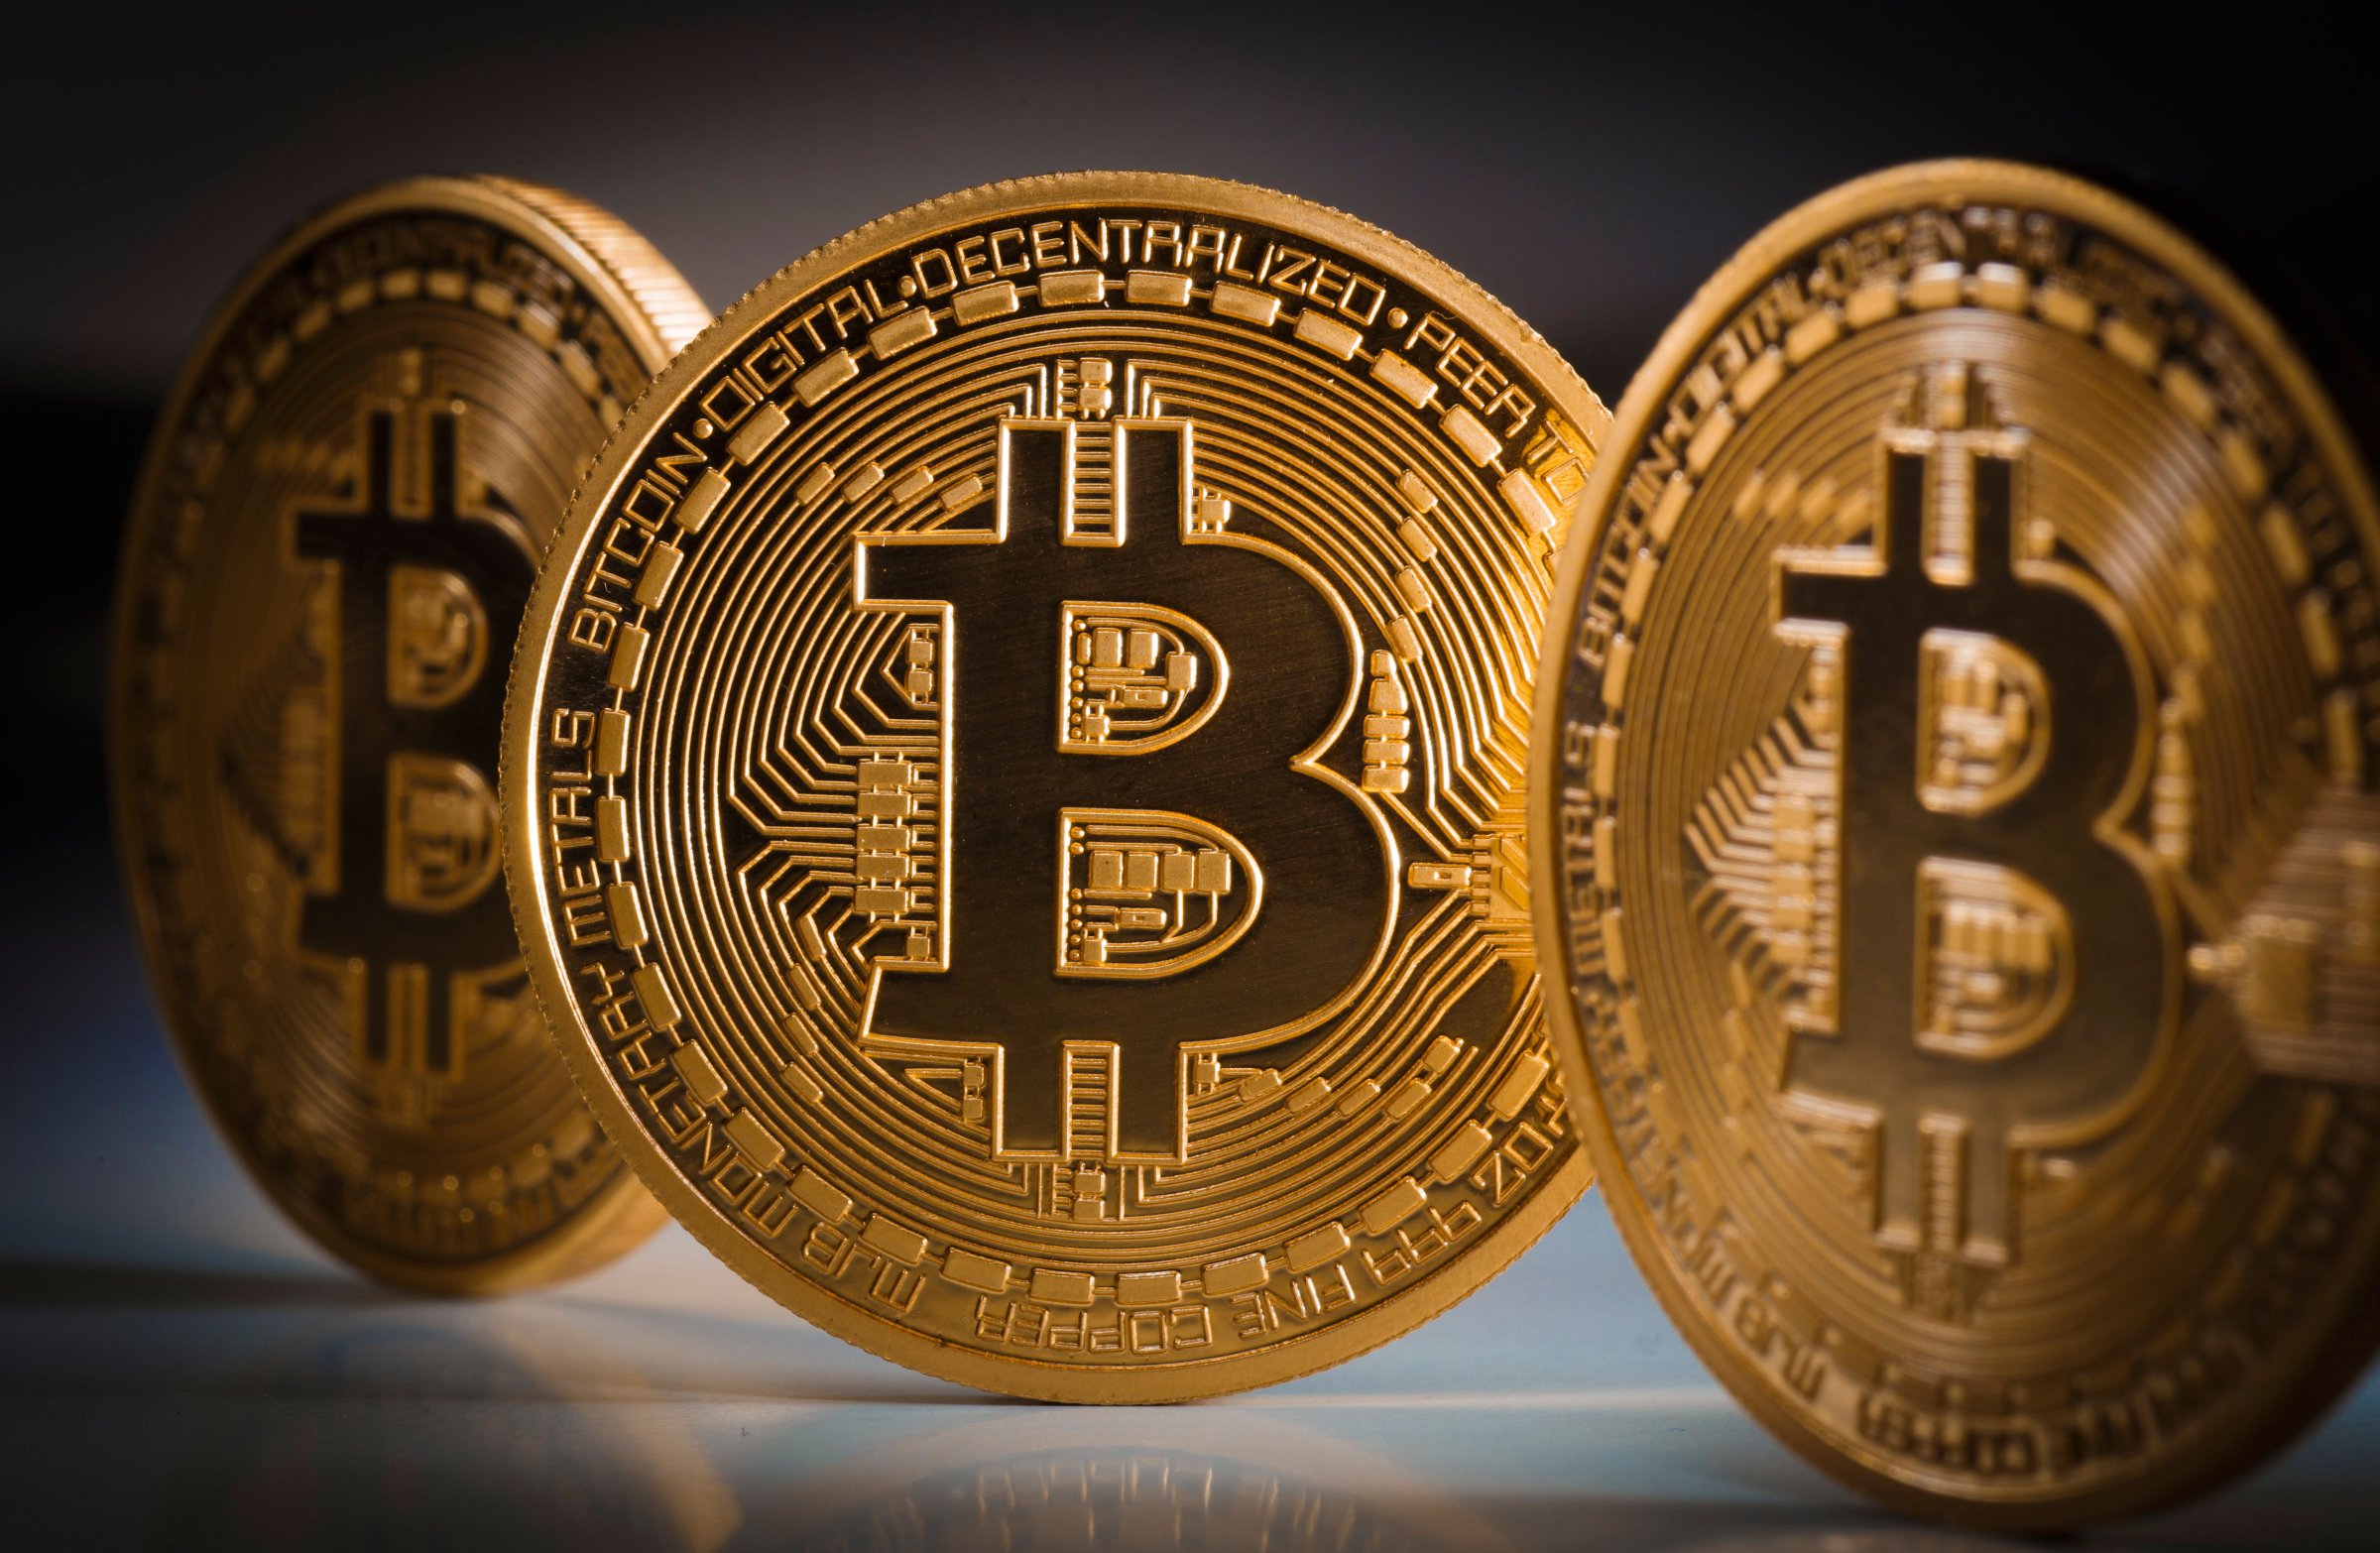 Bitcoin coins in a row